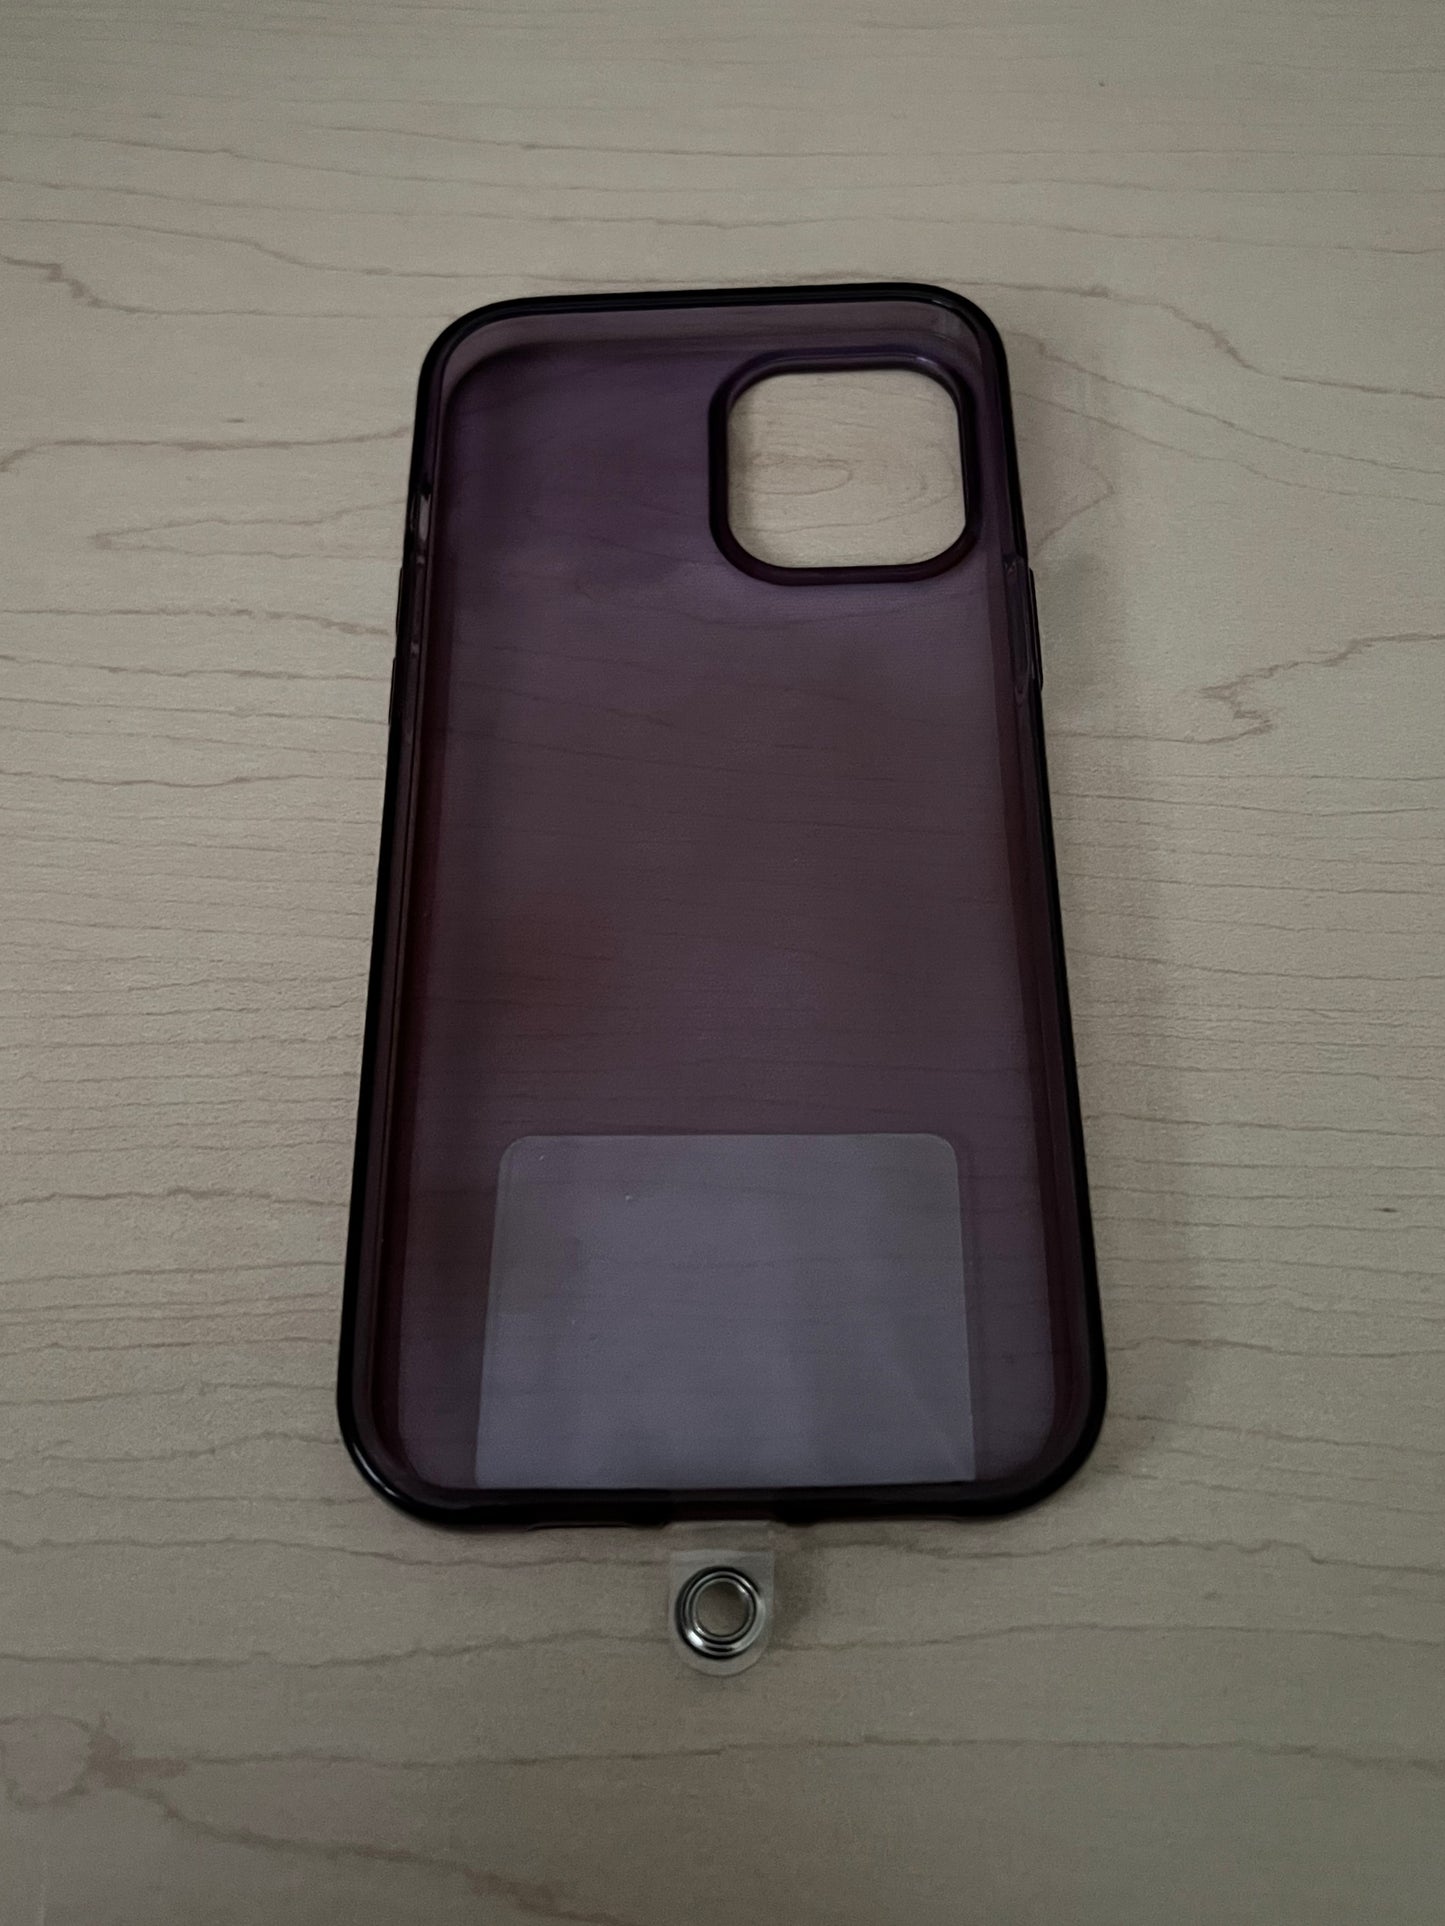 Mah Jong Middle Tile Pink Phone/Keychain/Bag Charm